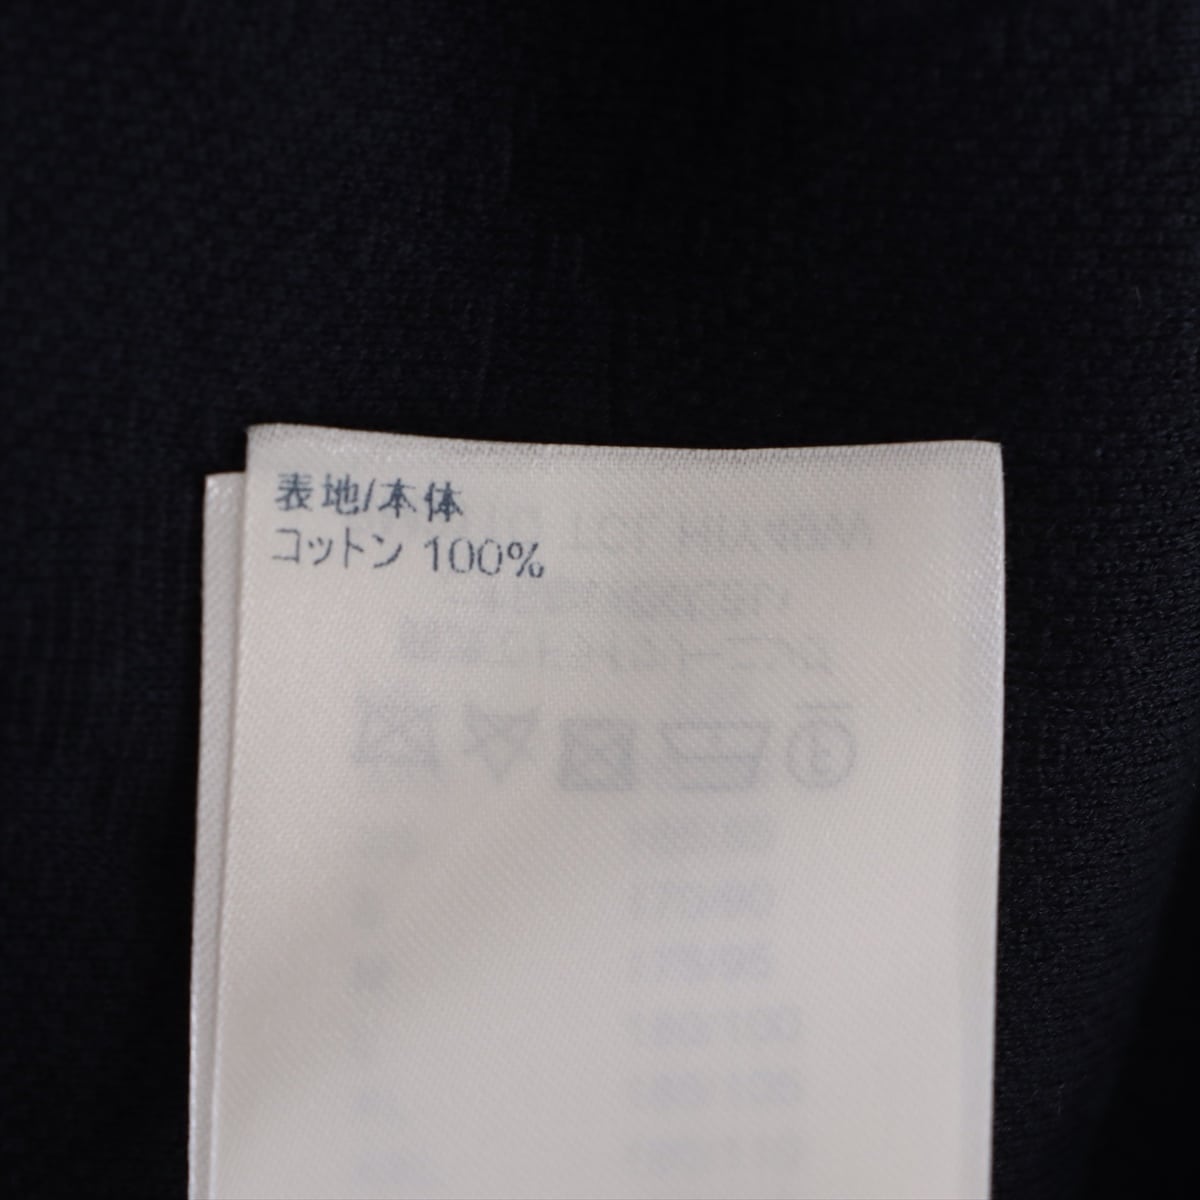 ルイヴィトン モノグラム 21年 コットン Tシャツ M メンズ ネイビー  RM211Q